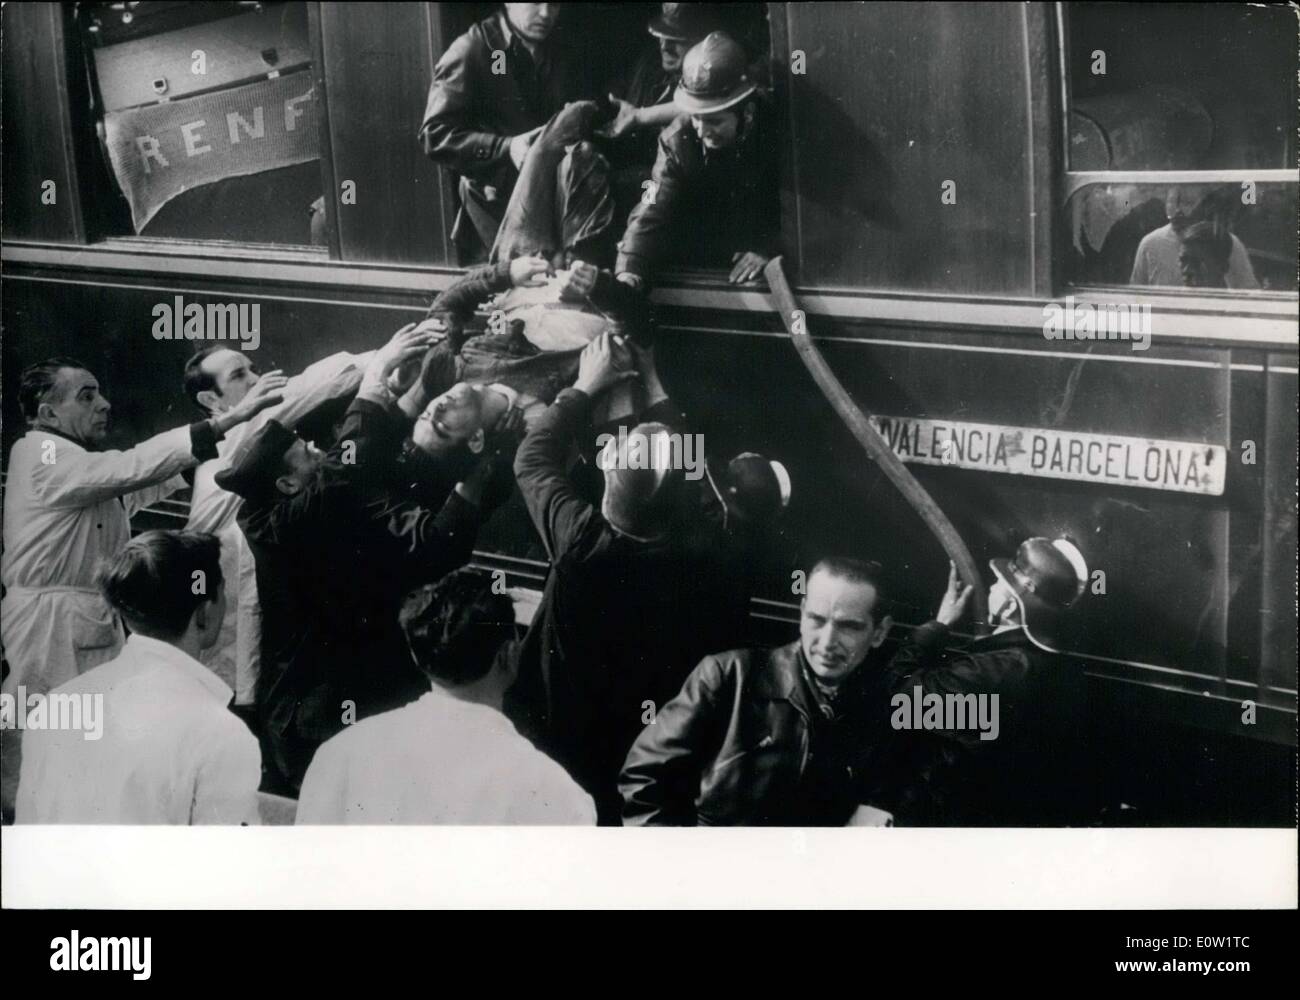 11 gennaio 1961 - venticinque morti e cinquanta feriti in un terribile incidente ferroviario, nei pressi di Barcellona. Foto Stock